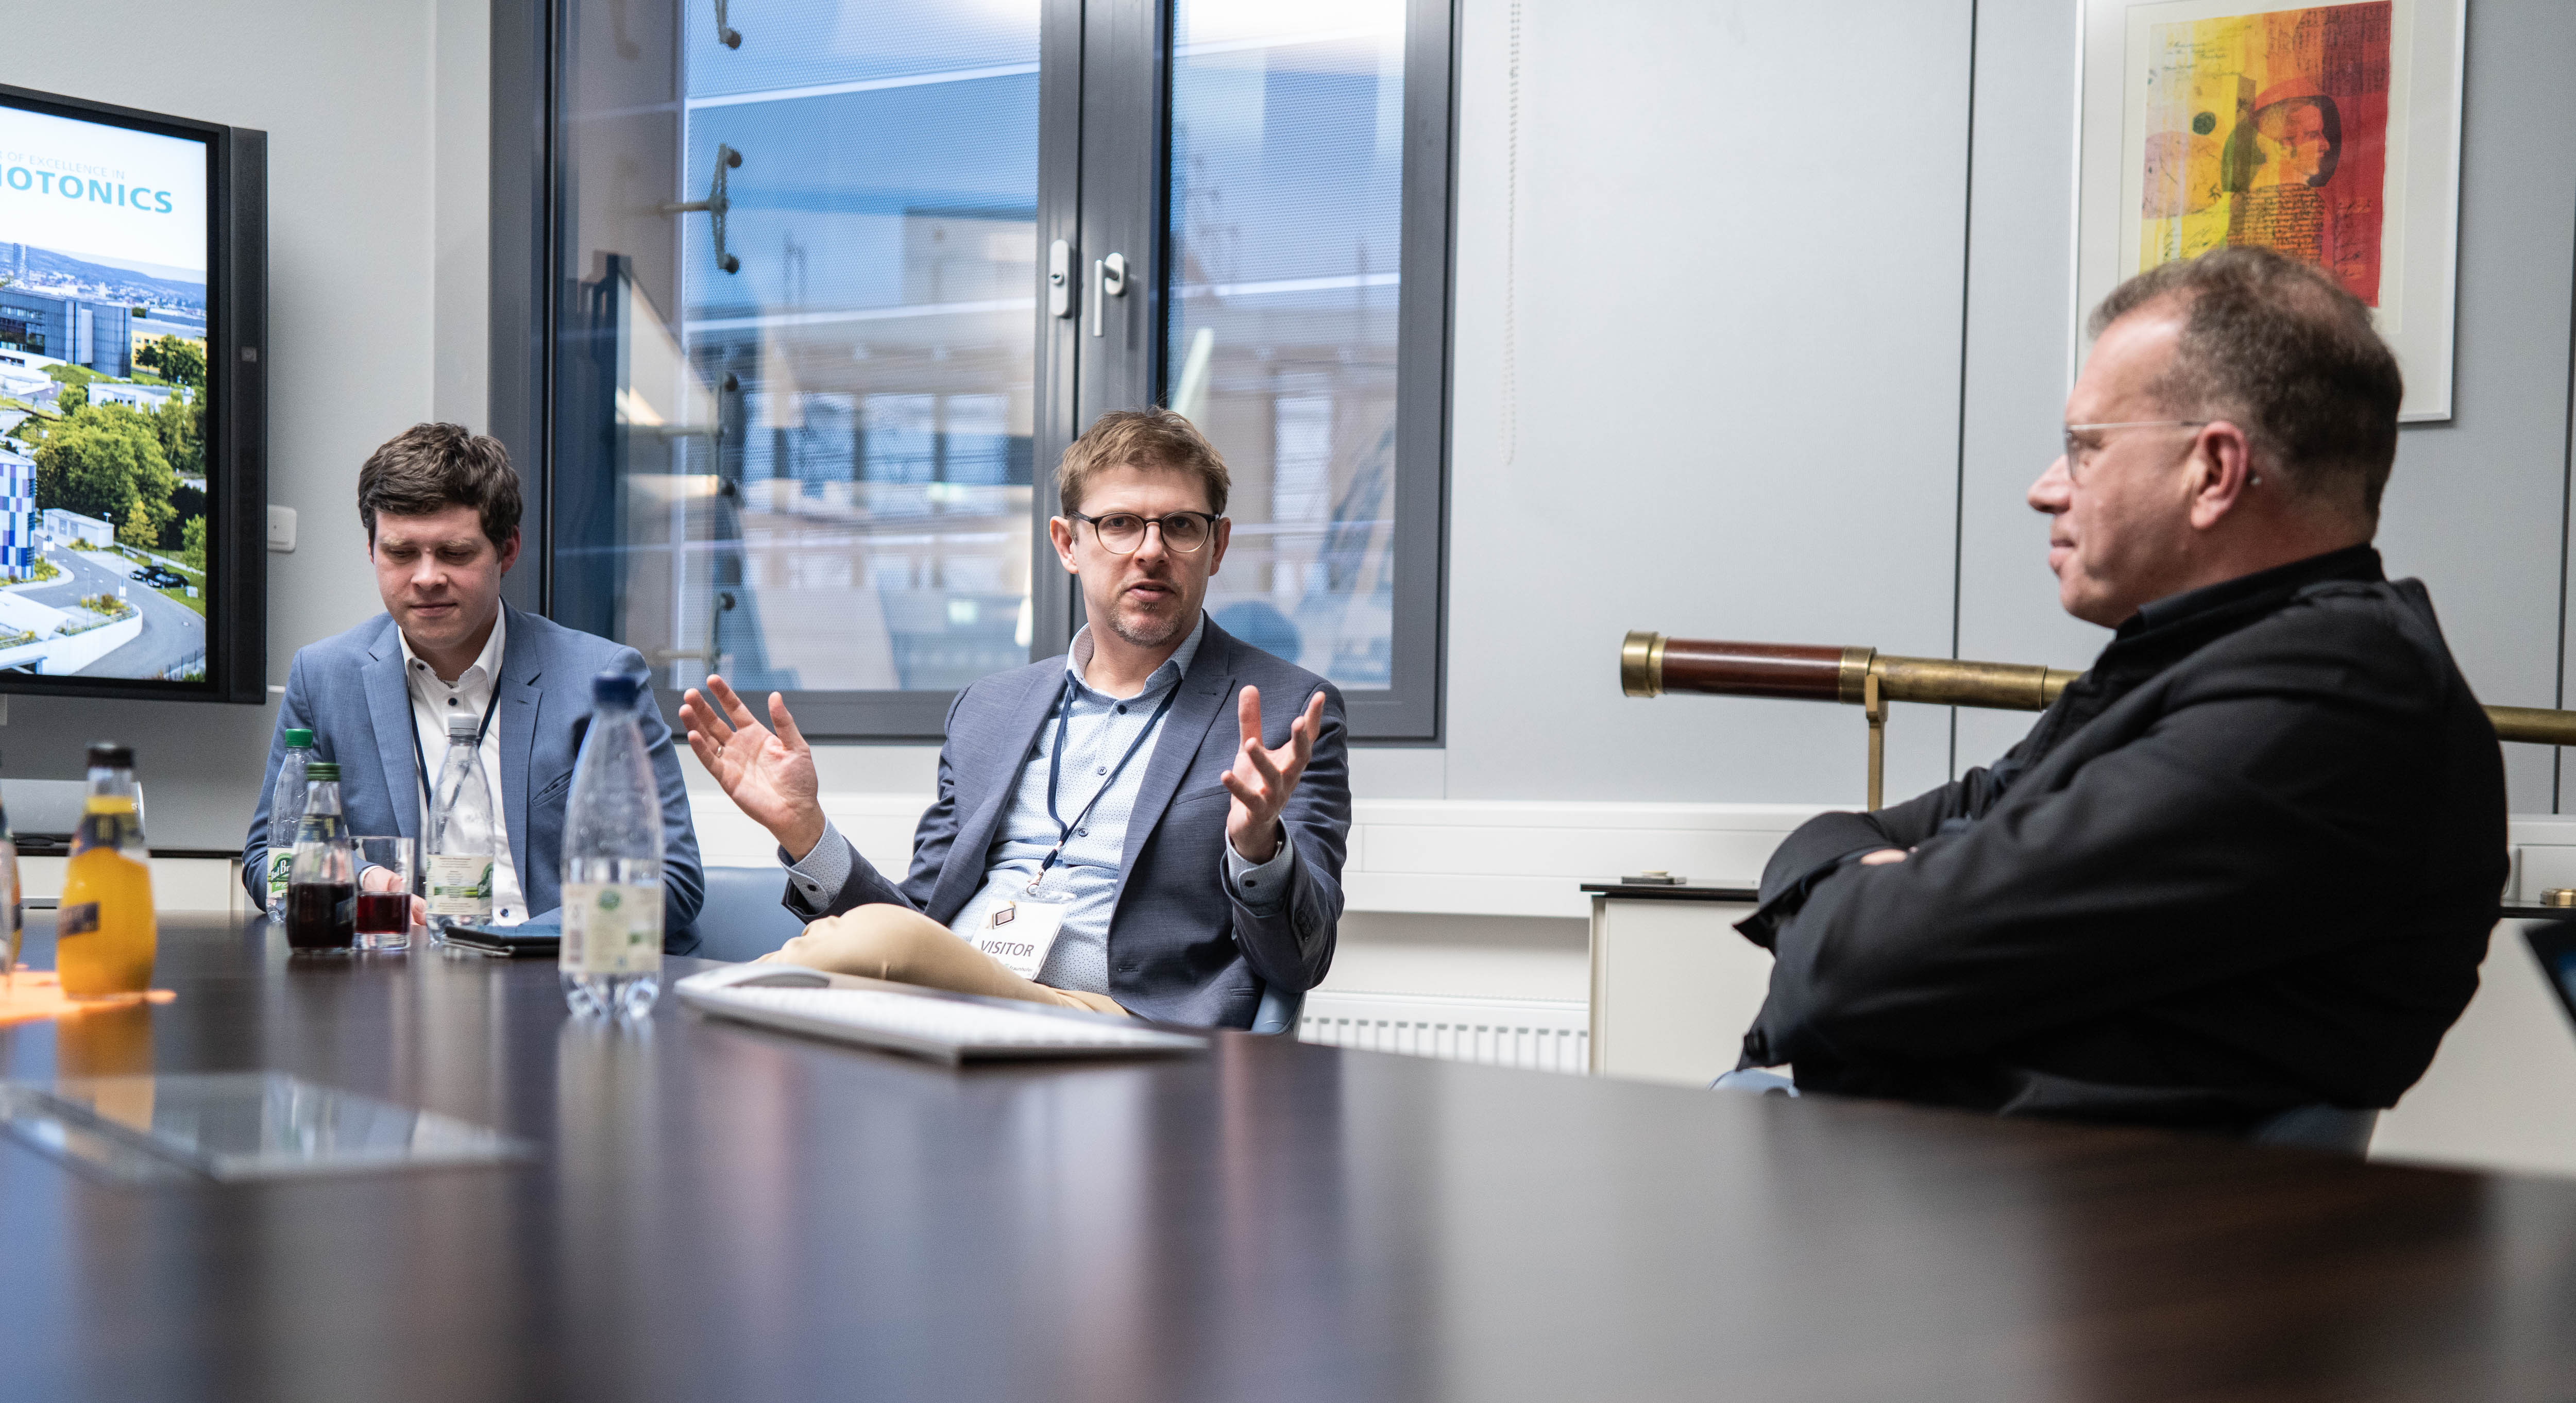  Die Abgeordneten Lutz Liebscher und Matthias Ecke (v. l. n. r.) im  Gespräch mit Andreas Tünnermann. Alle drei Personen sitzen an einem Tisch auf einer Längsseite im Gespräch zugewandt. 